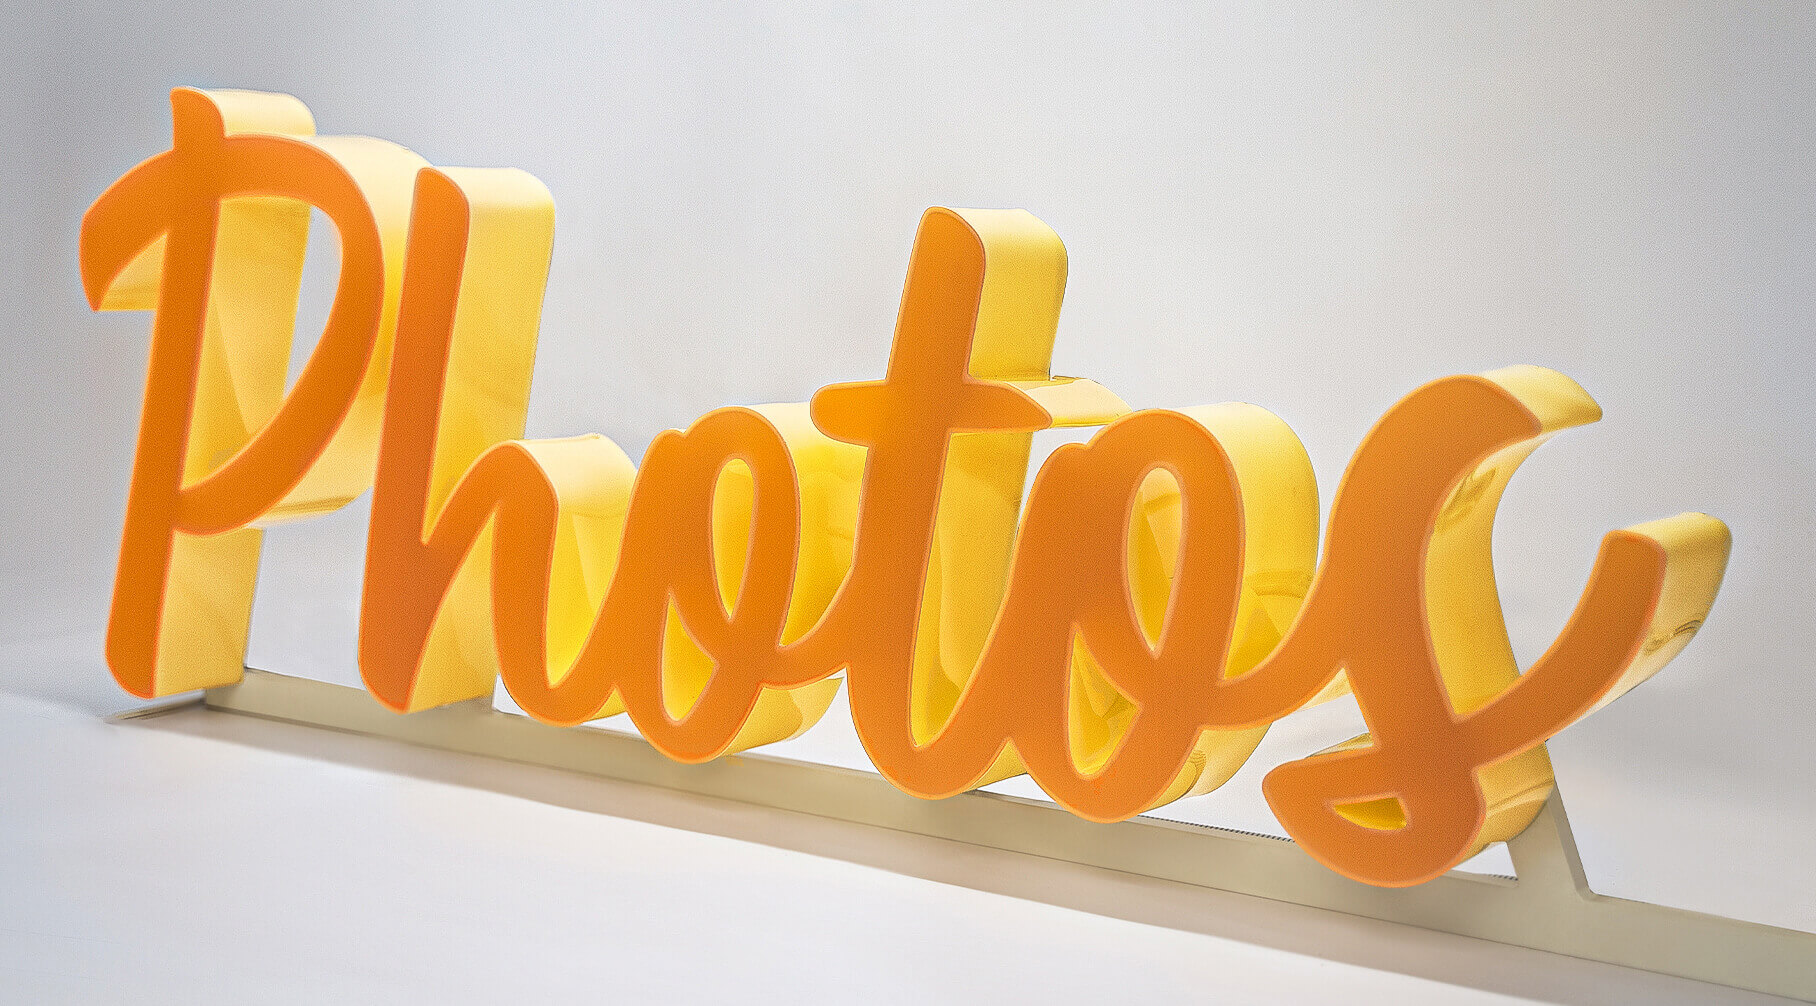 Photos - Lettere in plexiglass brillanti sul fronte e sui lati, in arancione.